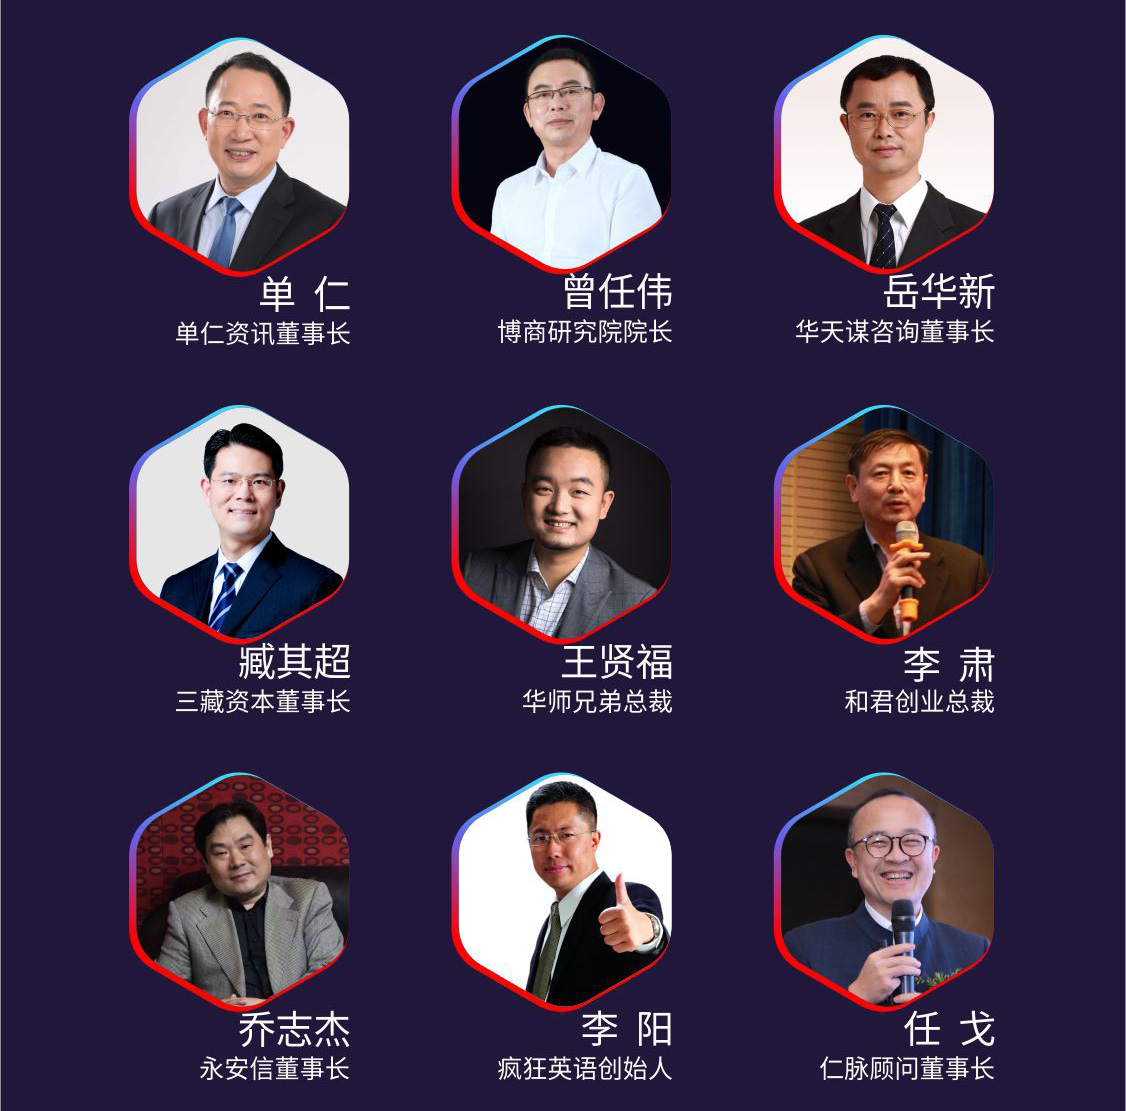 2019国际培训产品博览会(培博会)宣传H5长图(1)_10.jpg